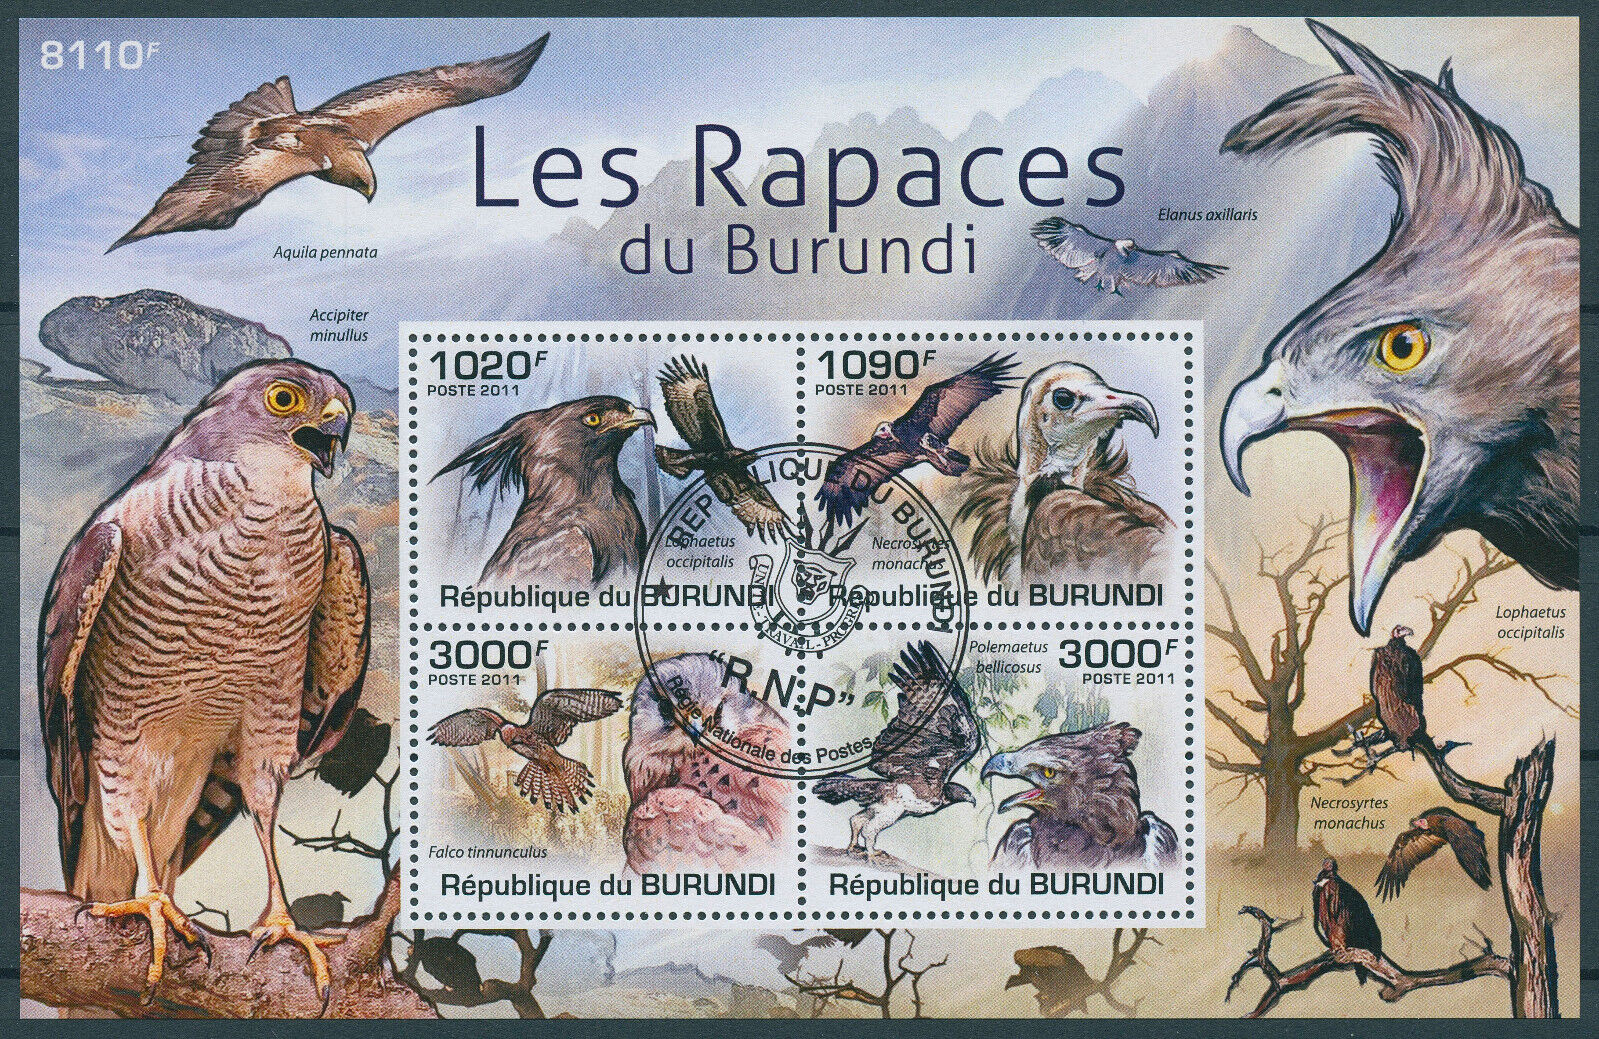 Burundi 2011 CTO Birds of Prey on Stamps Raptors Vultures Eagles Kestrel 4v M/S